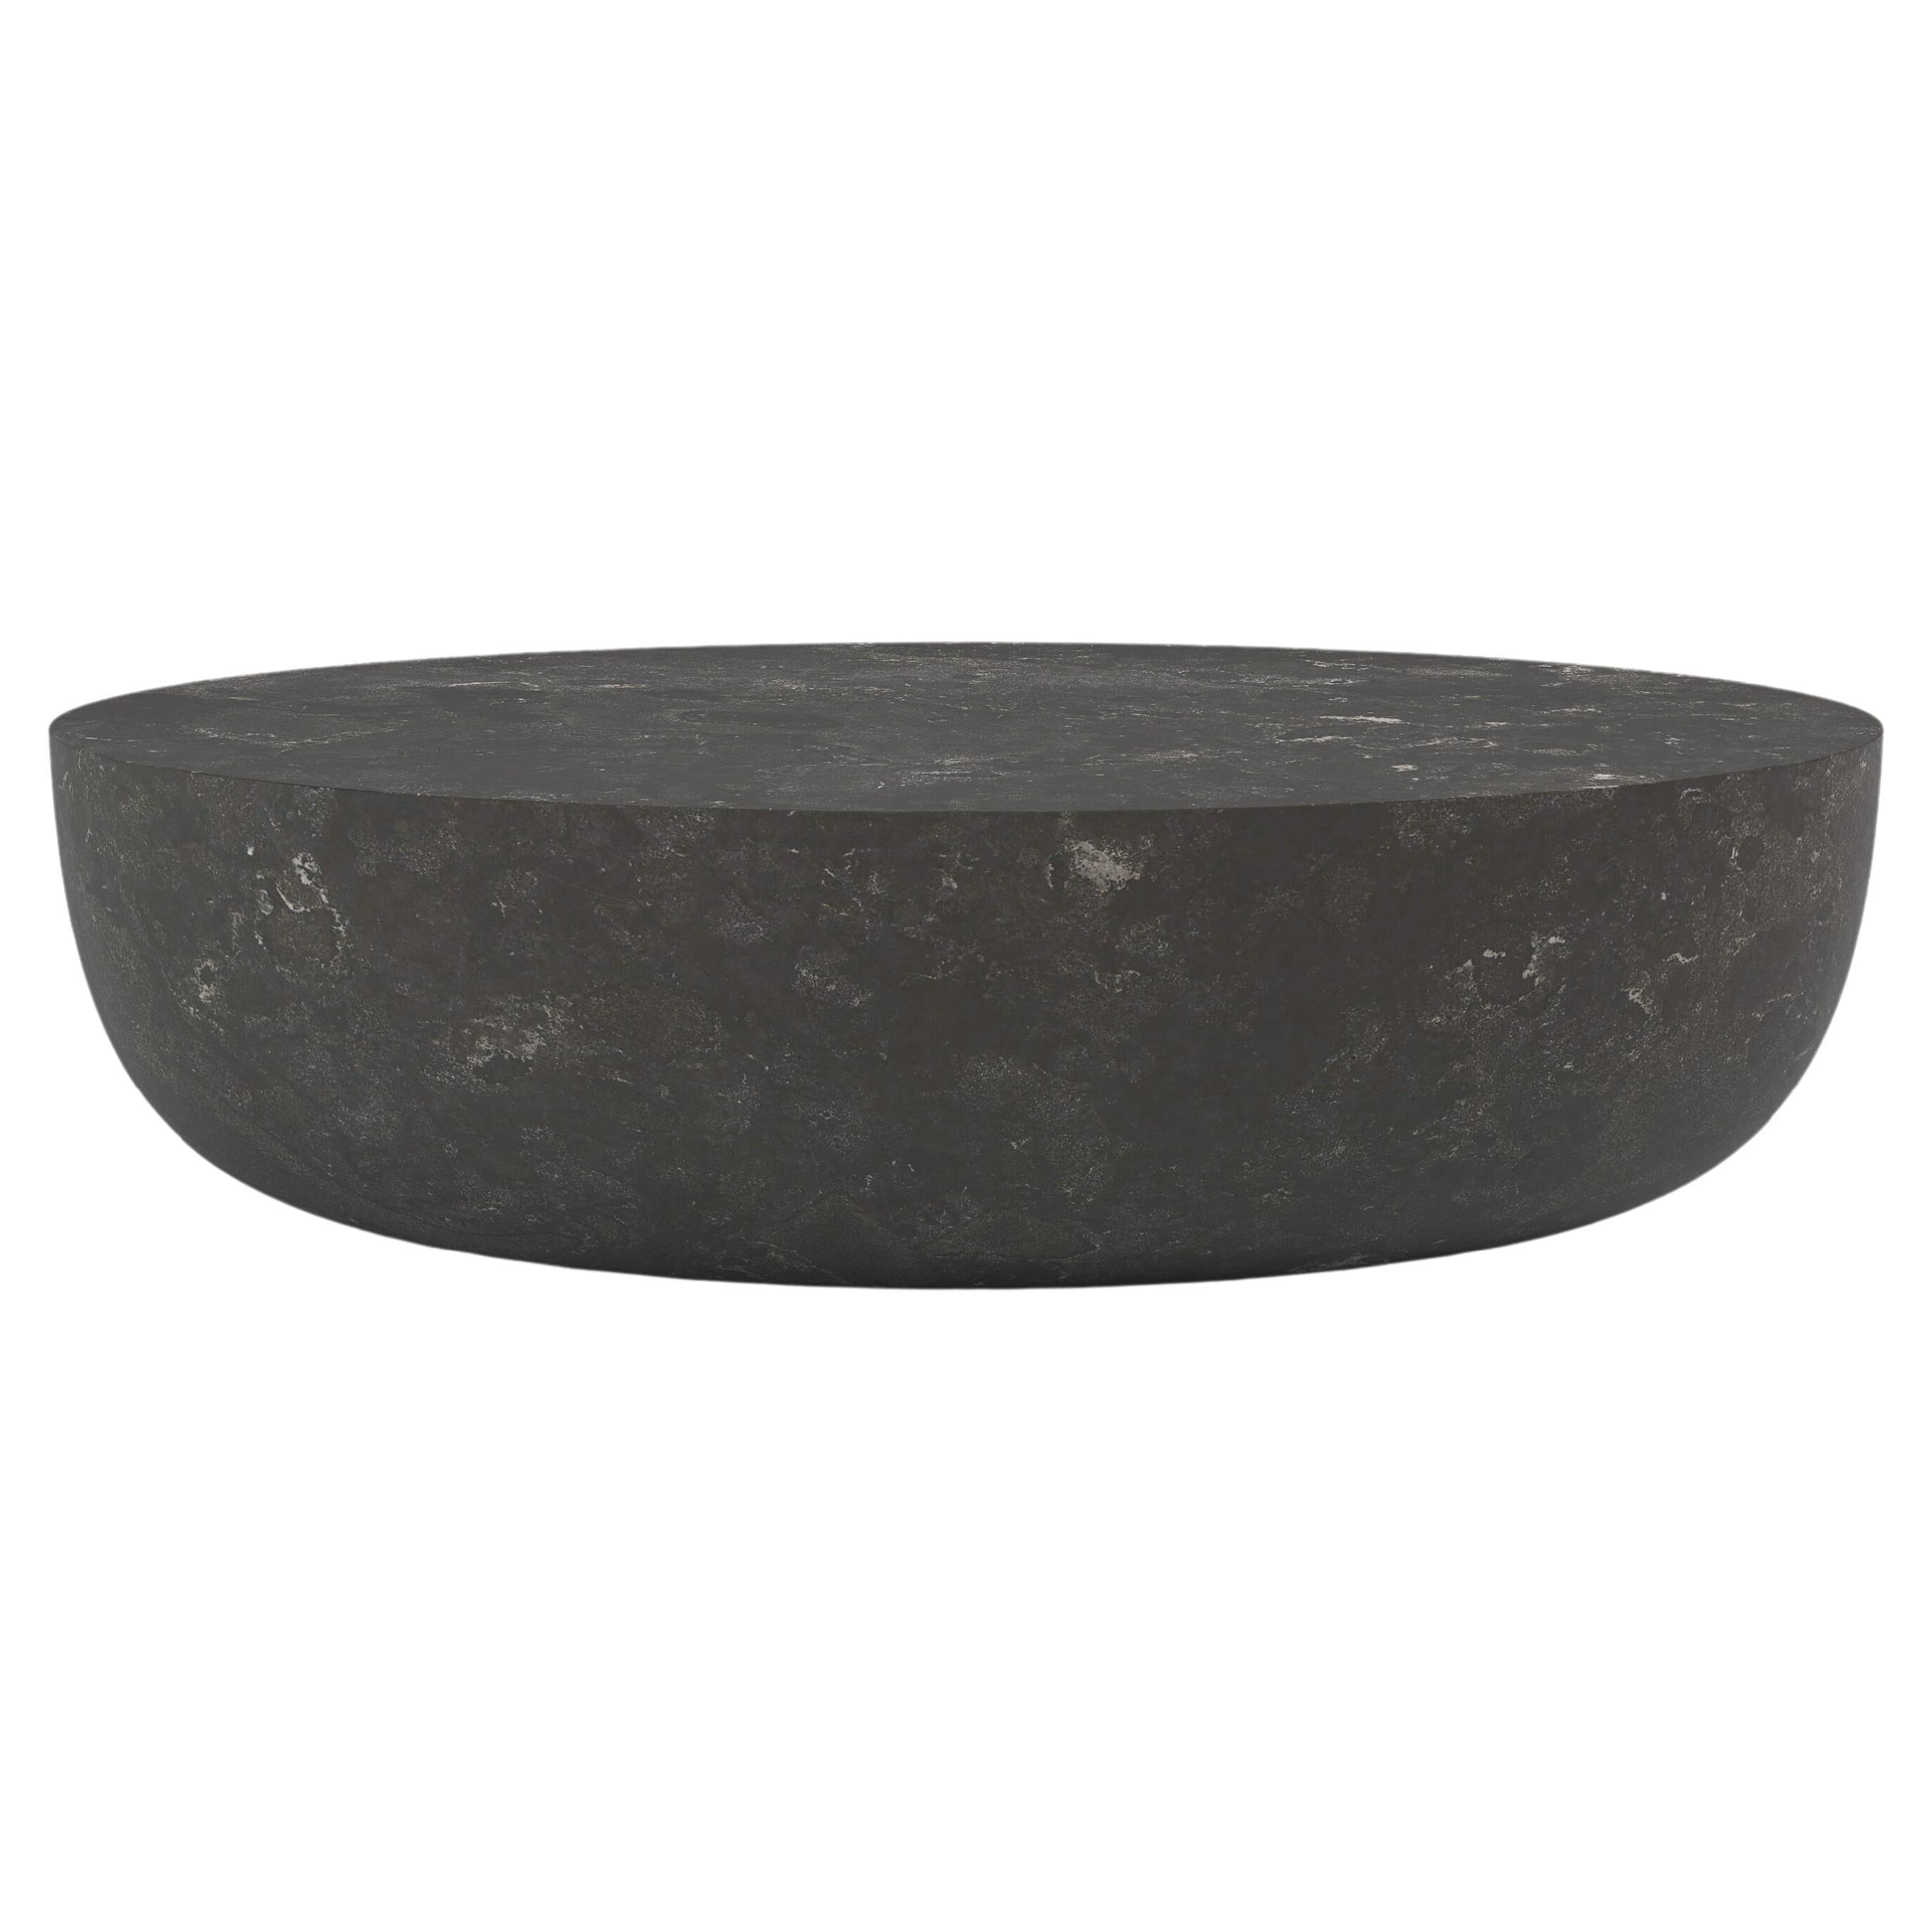 FORM(LA) Sfera Oval Coffee Table 72”L x 48”W x 16”H Nero Petite Granite